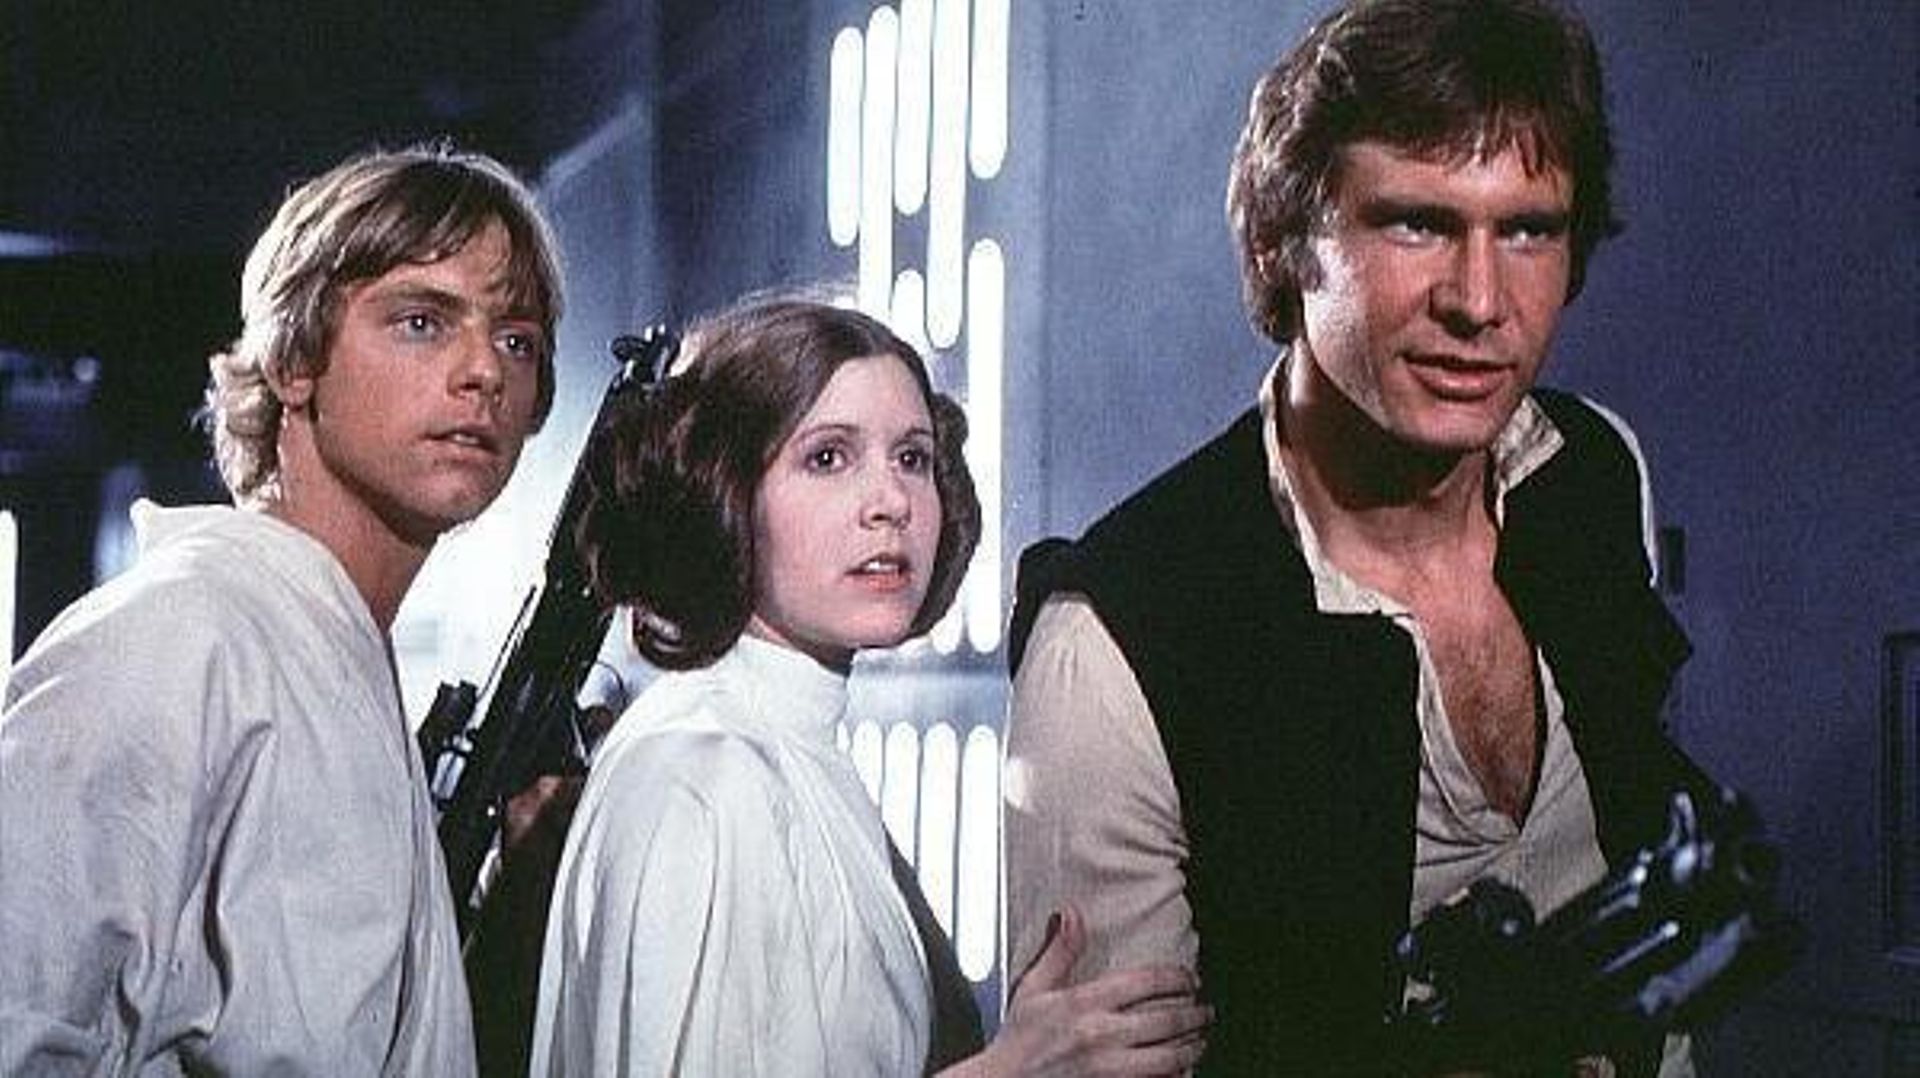 Luke, Leia et Han Solo dans "Star Wars, Episode IV: Un nouvel espoir"